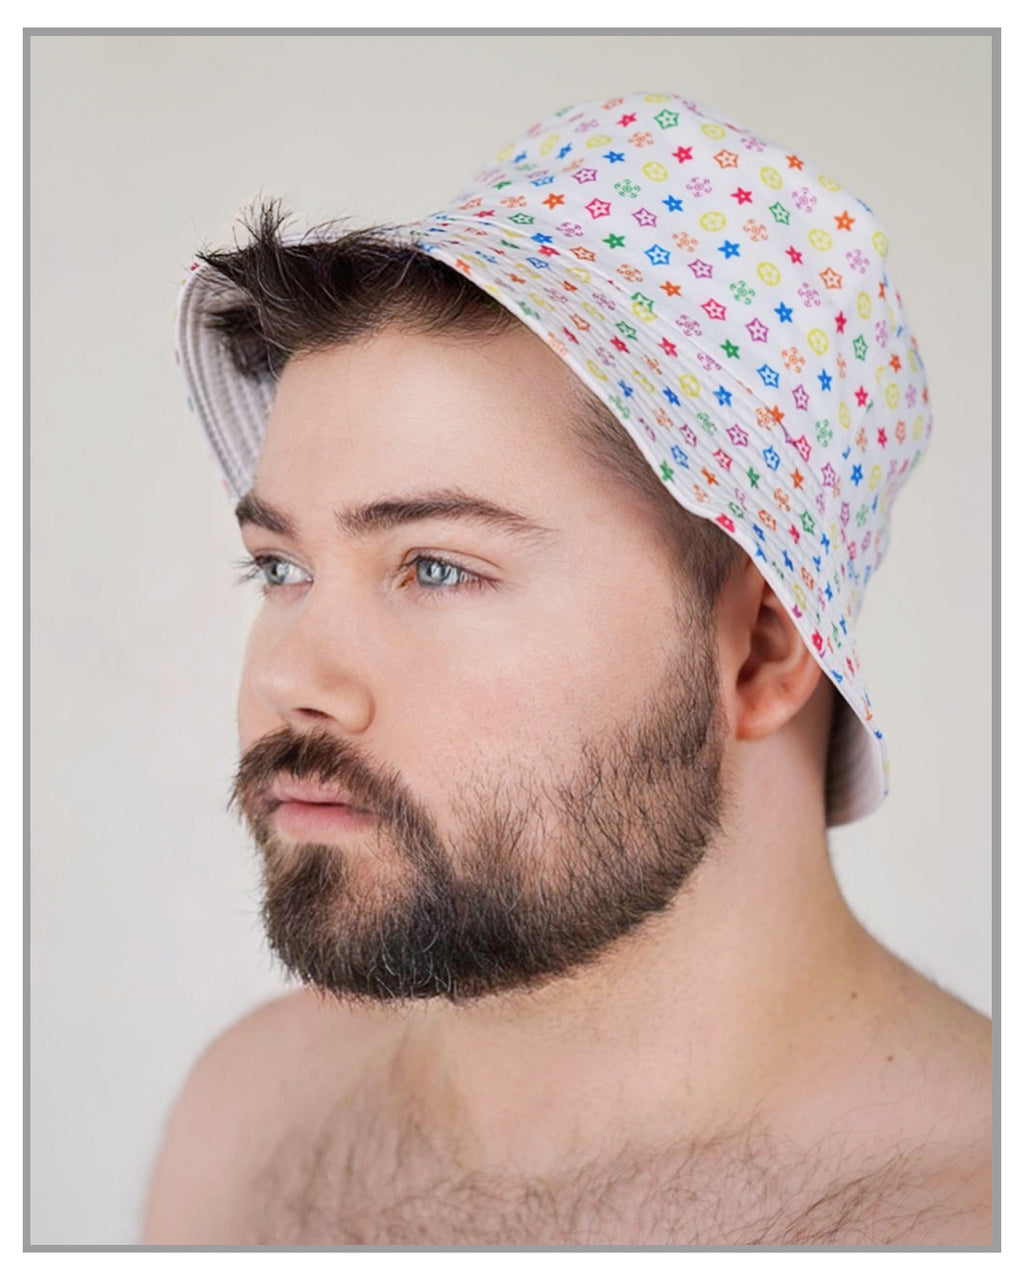 Designer Printed White Patterned Multi Color Bucket Hat